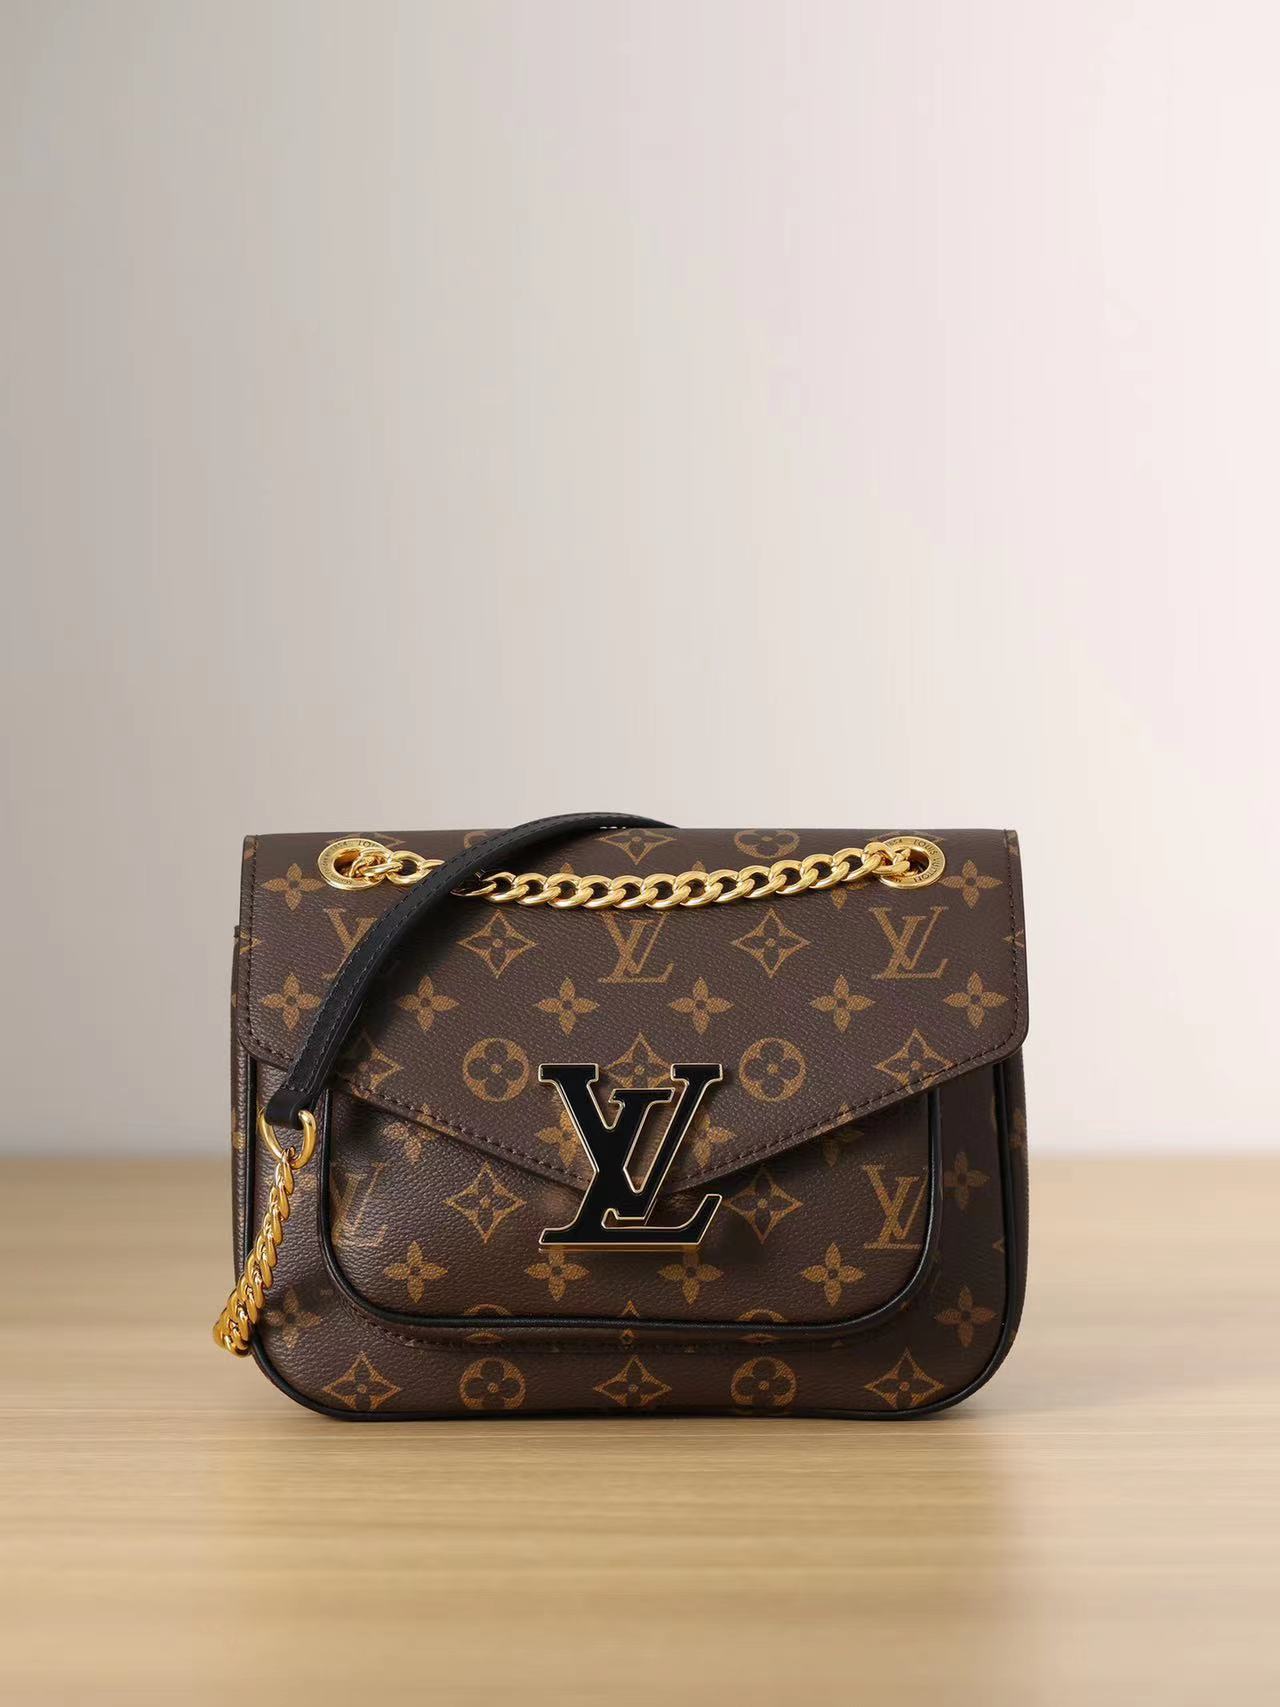 Best Replicas Bags - Louis Vuitton Passy Bag M45592 Best Louis Vuitton LV Replica Bags On Sales